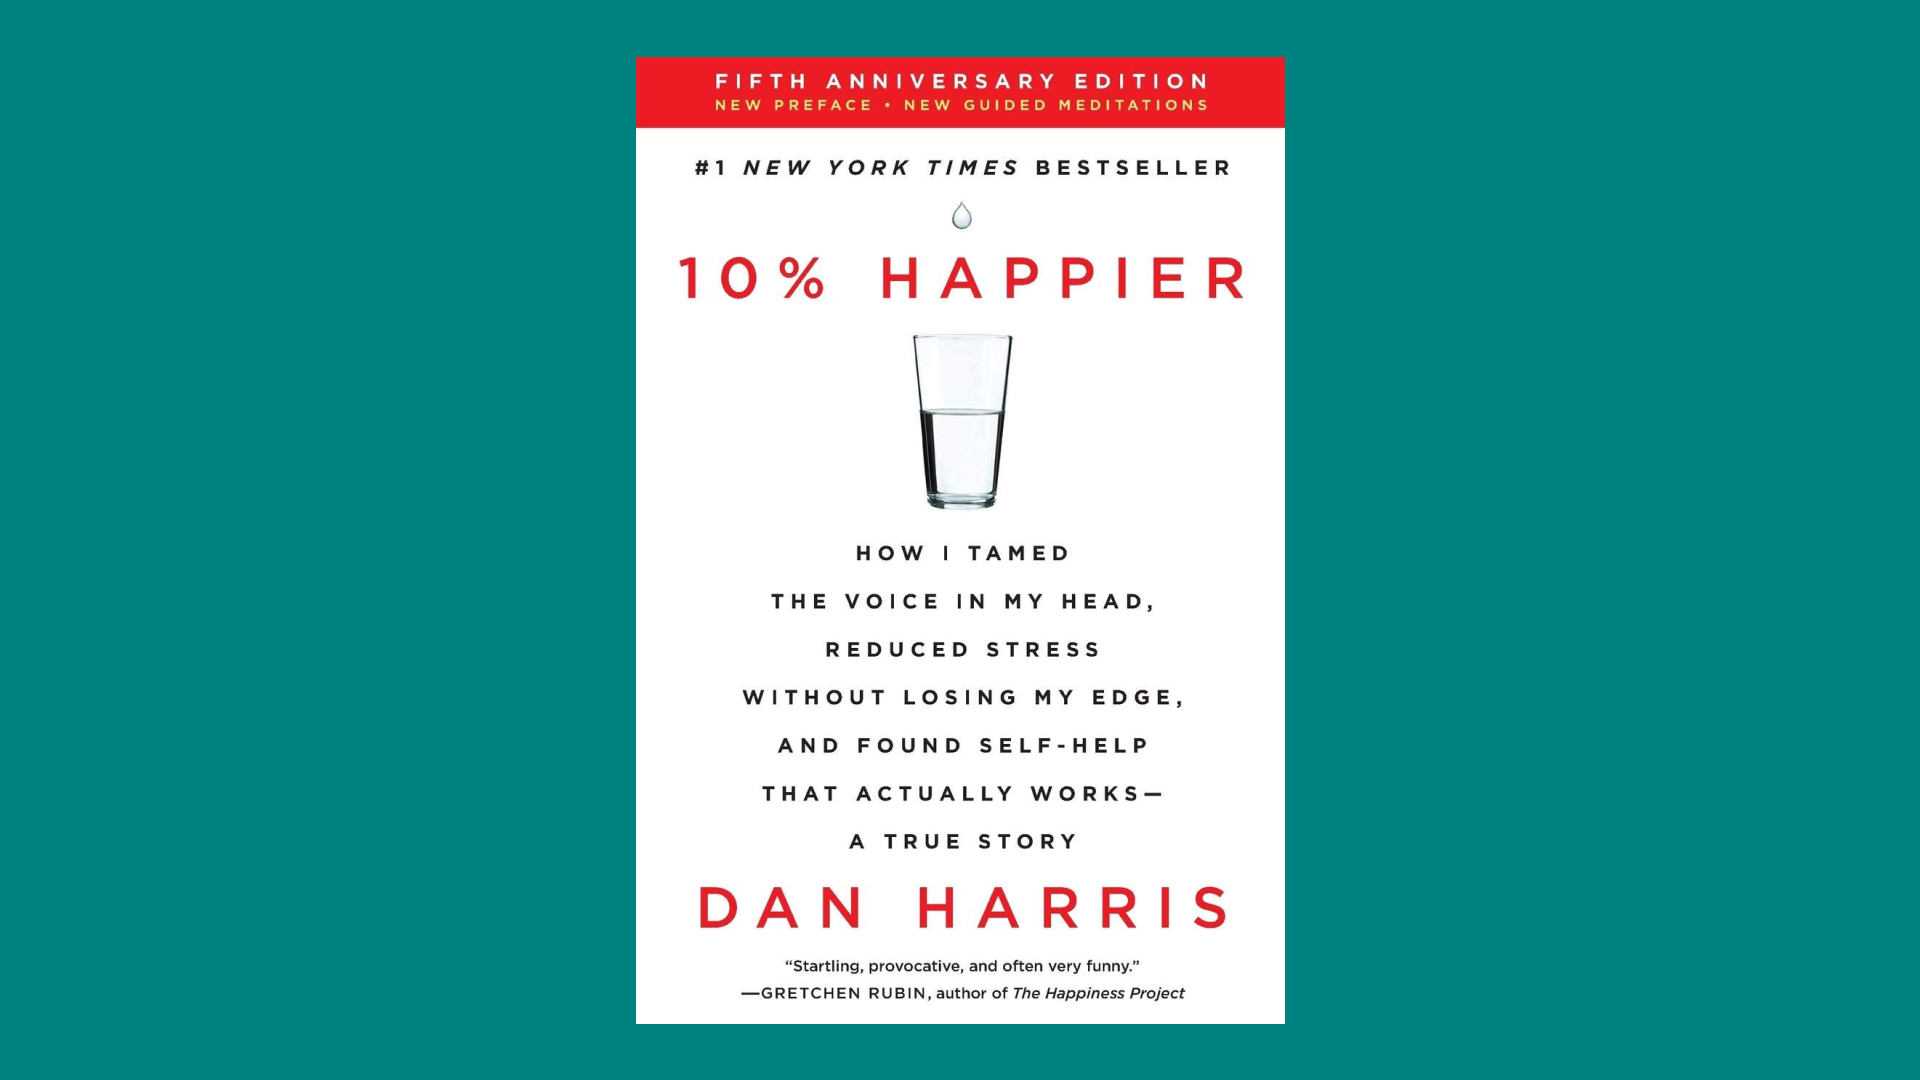 "10% Happier" by Dan Harris